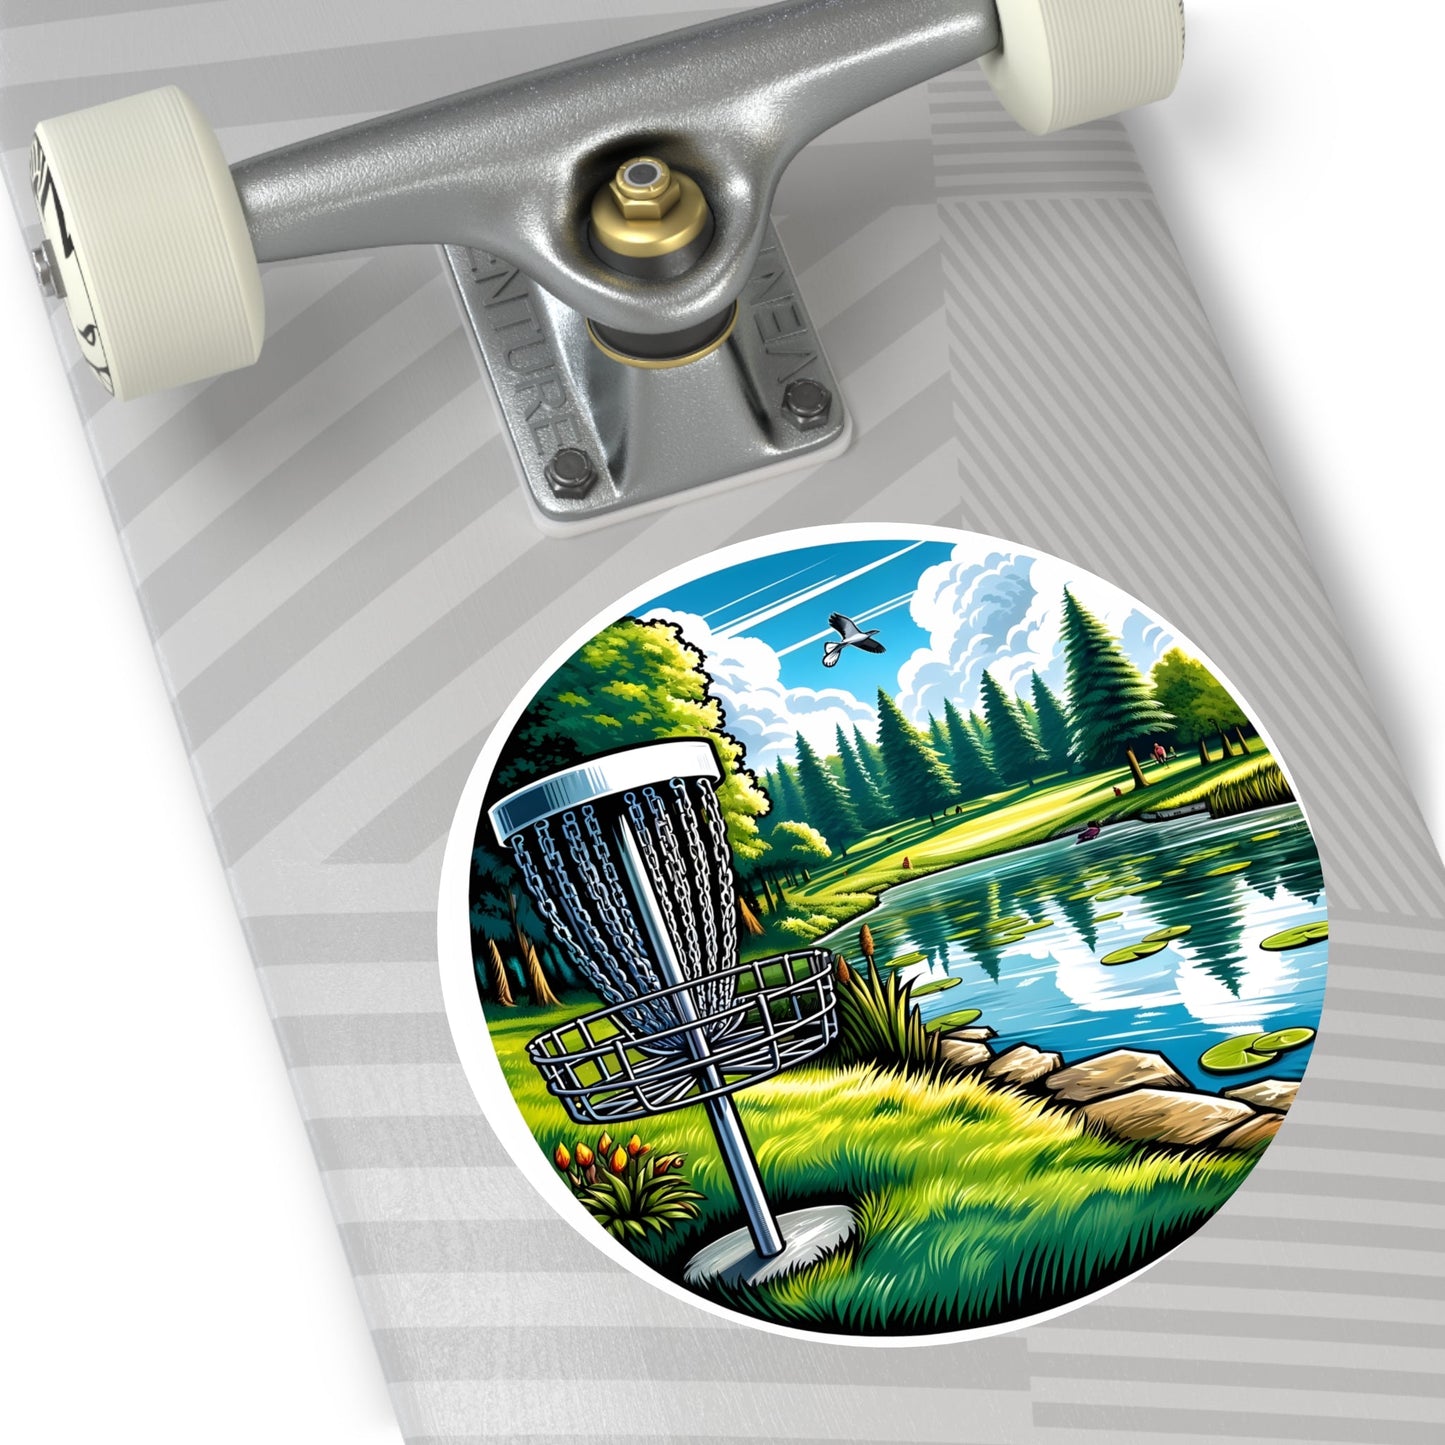 Disc Golf Basket by Pond v1 Sticker - Round Vinyl Stickers - Quirky Goodies